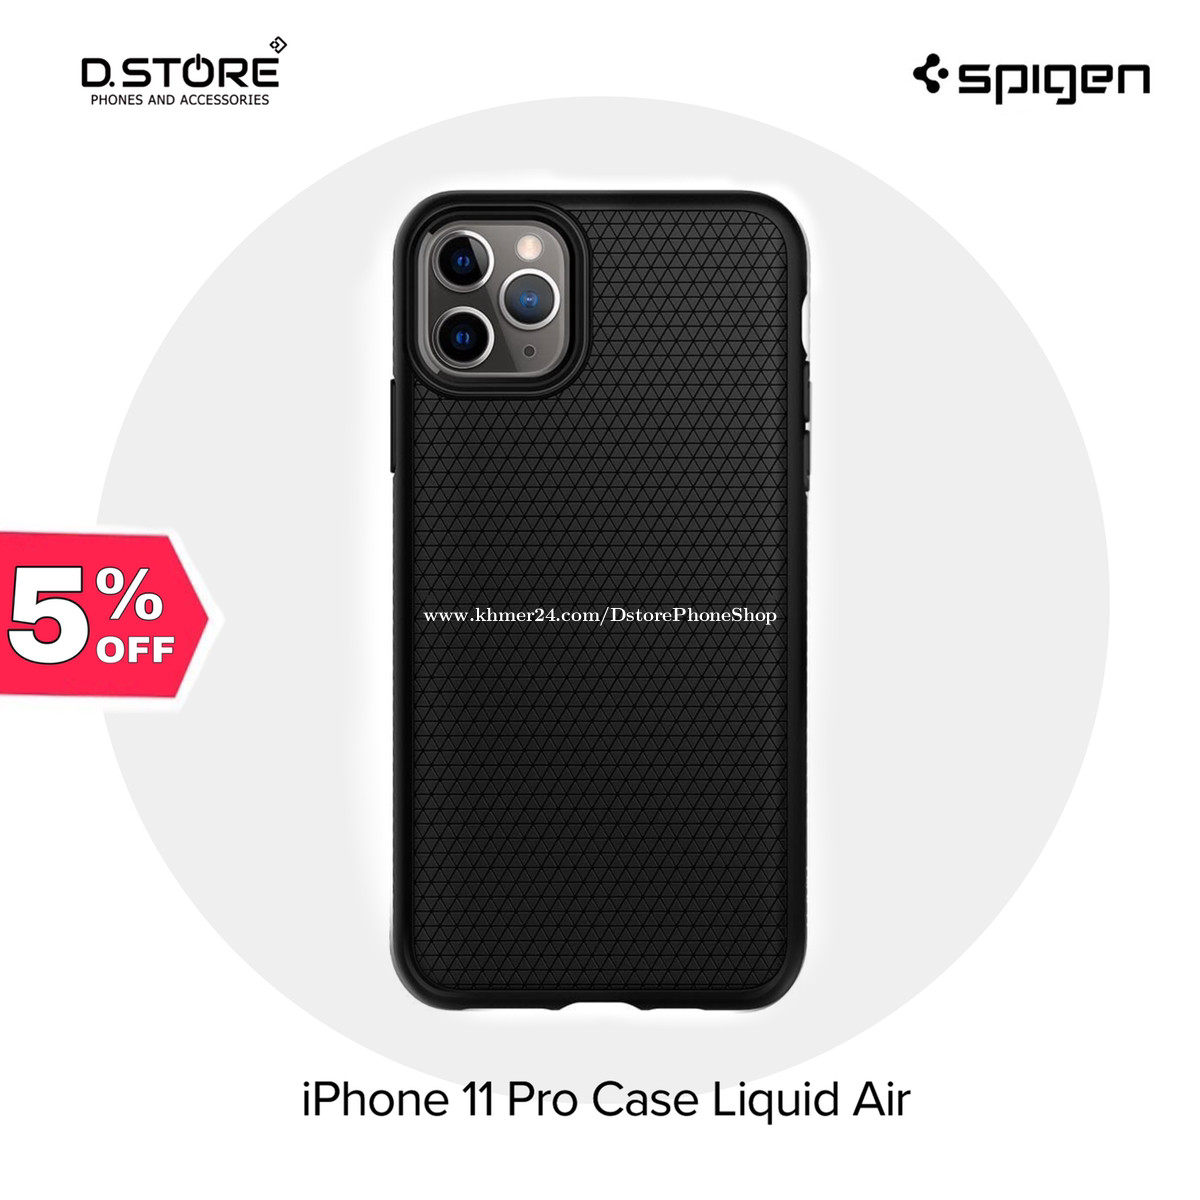 iPhone 11 Case Liquid Air